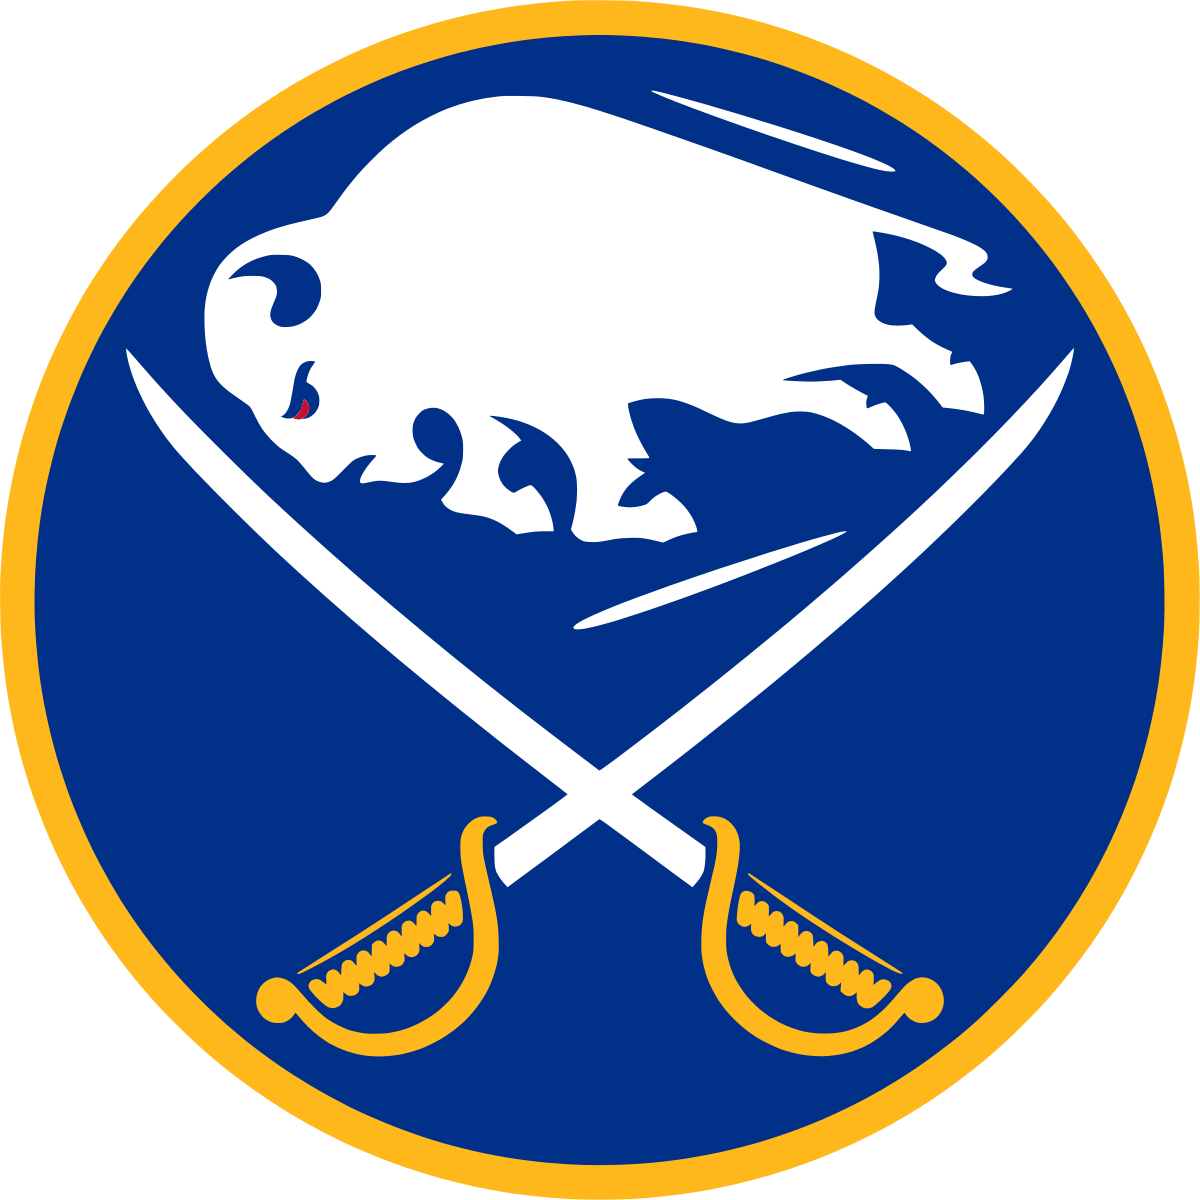 Buffalo Sabres NHL